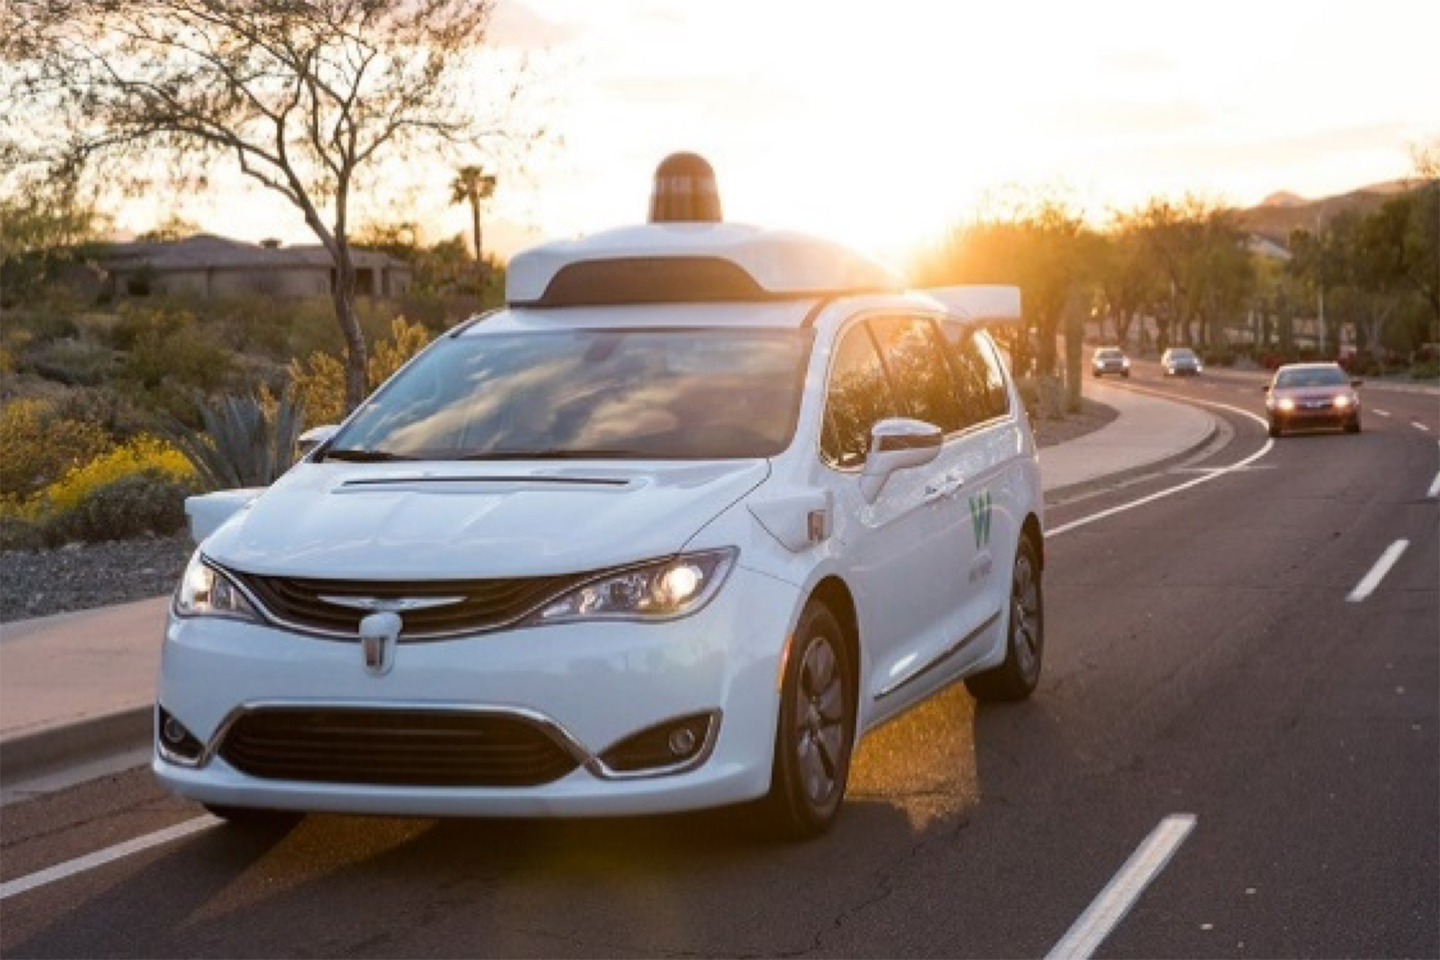 TOMNET evaluates attitudes about autonomous vehicles